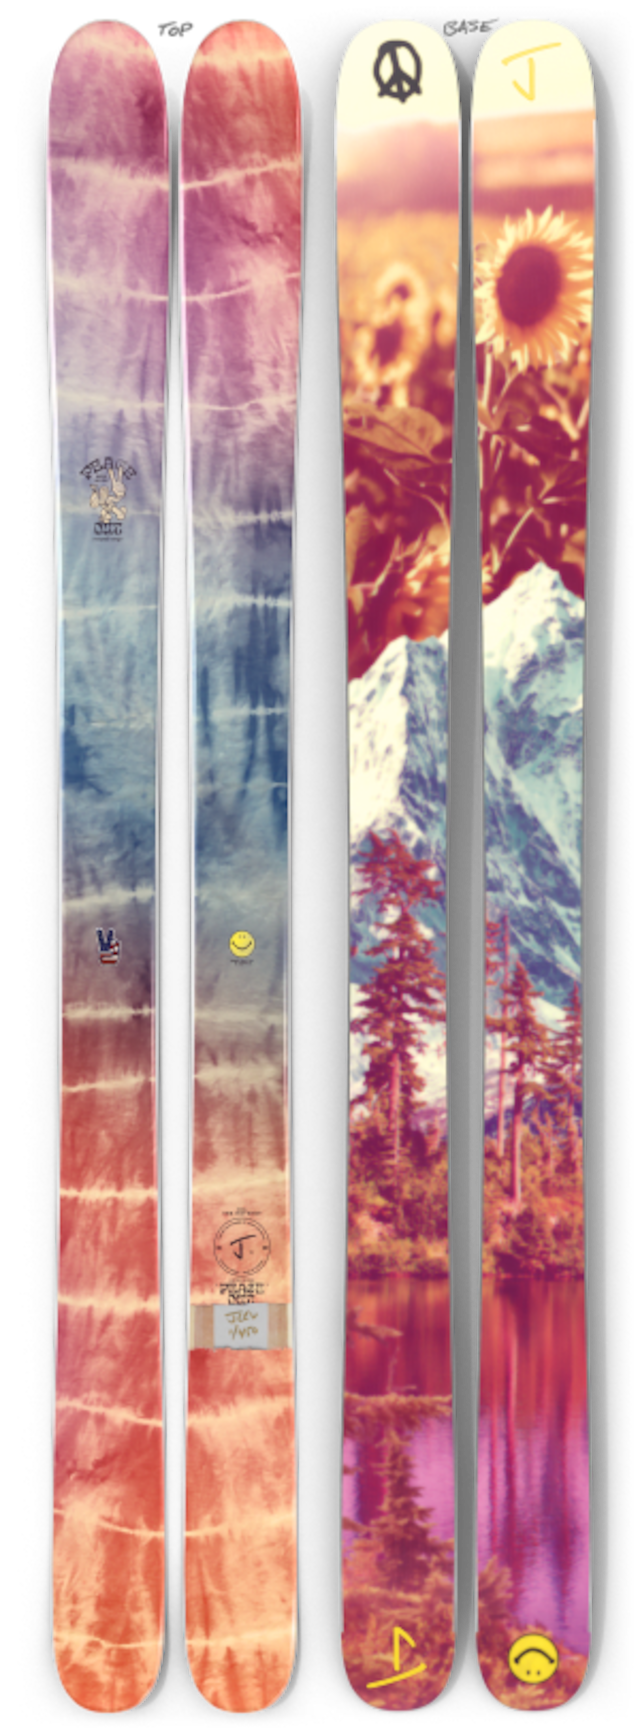 【予約】J skis - ホットショット「ピースアウト」限定版スキー【特典付き】